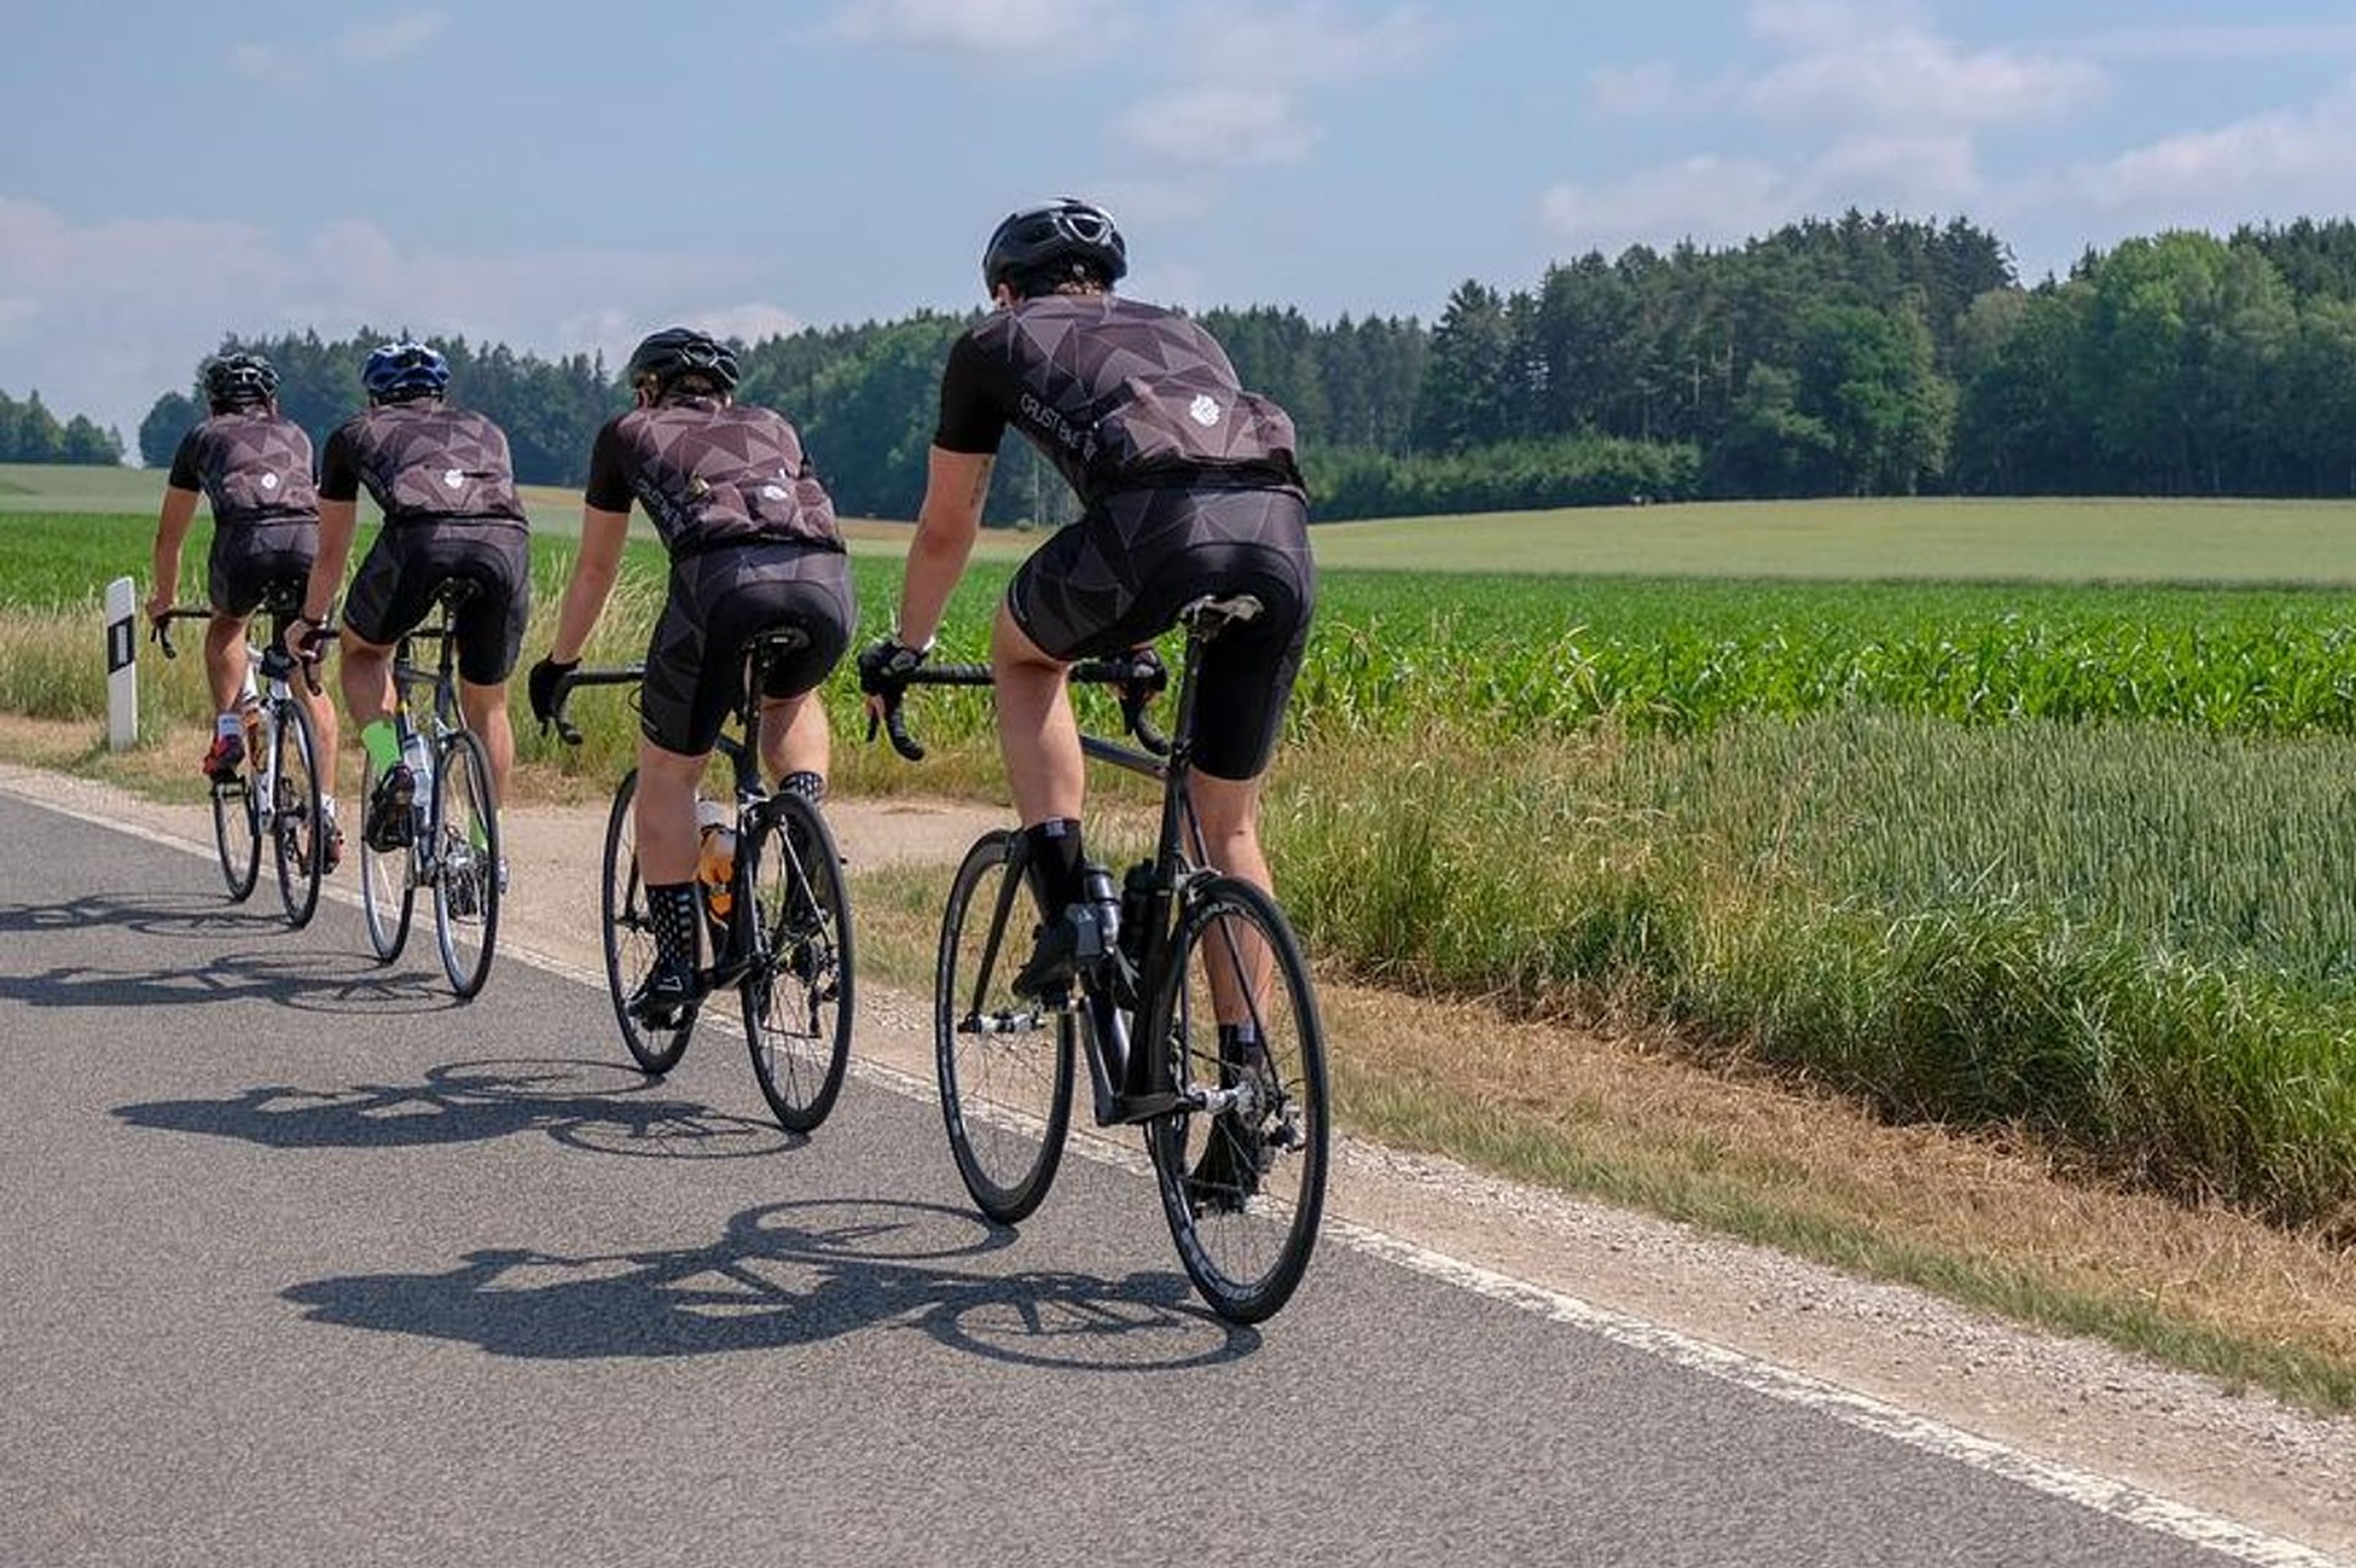 La DGT explica como adelantar a un ciclista cuando viene otro de frente